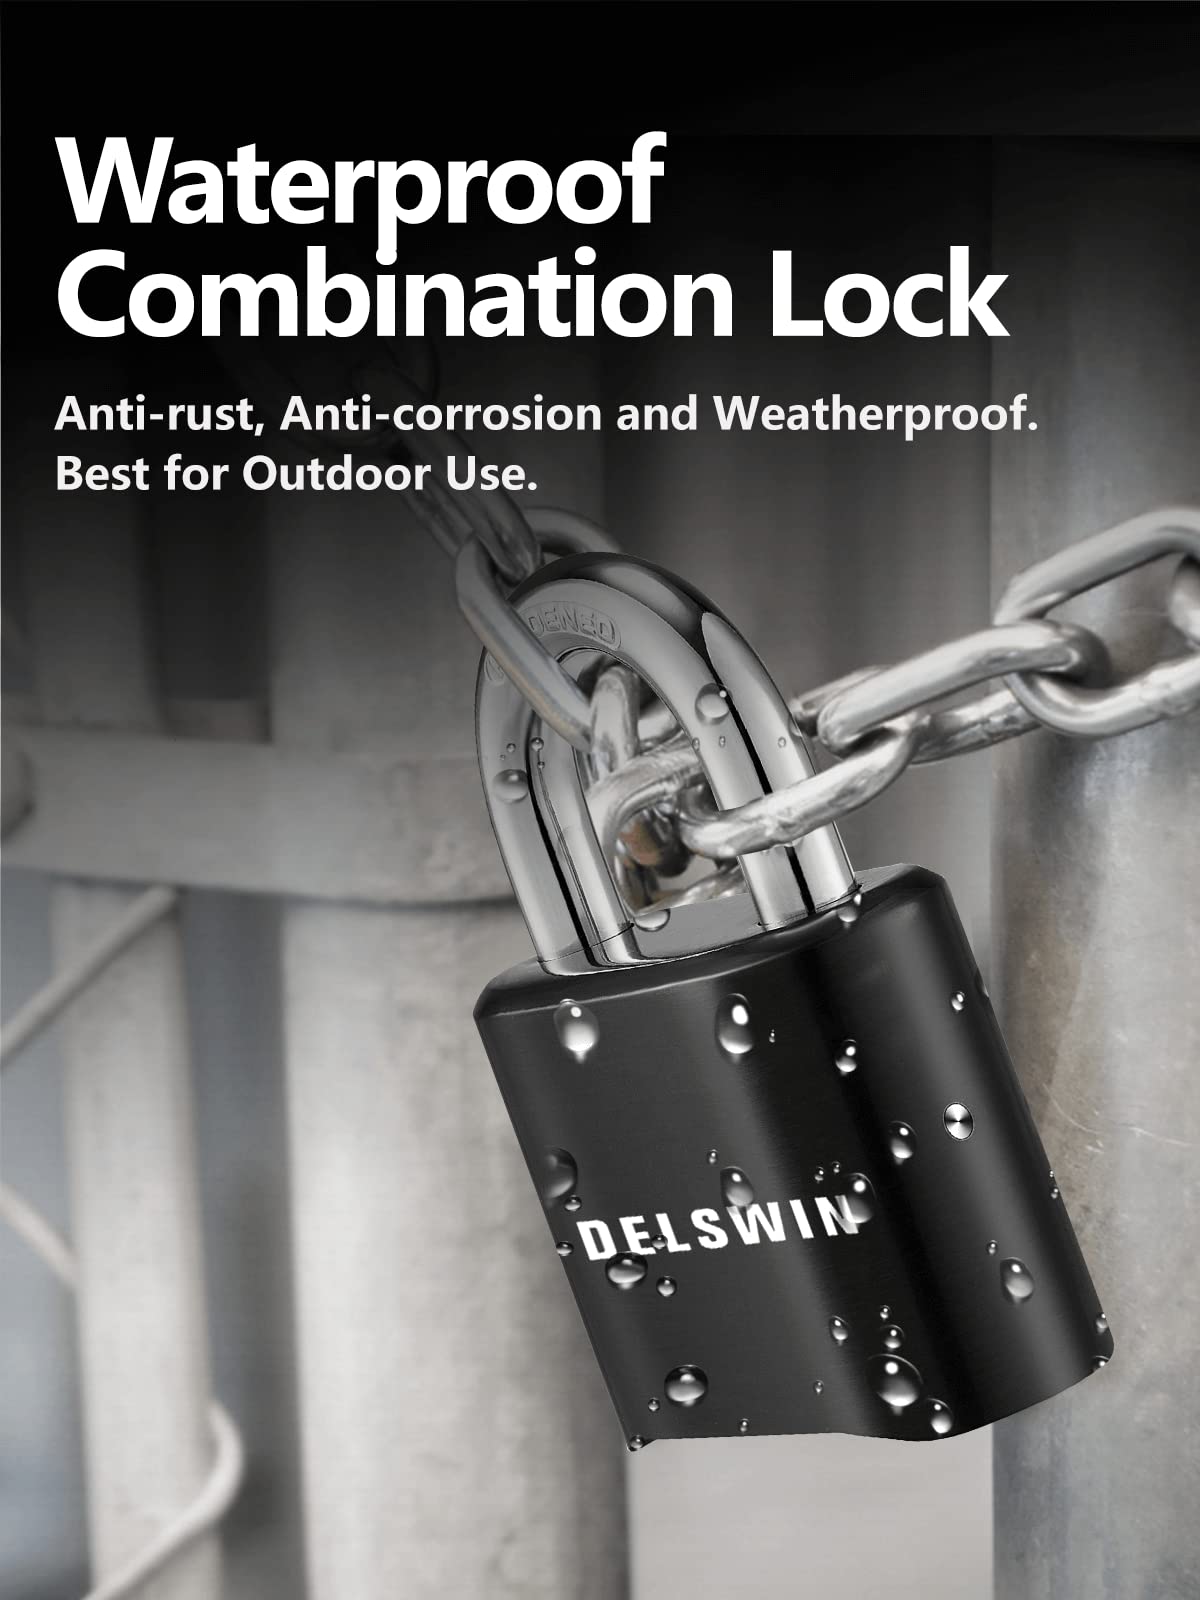 DELSWIN 4-Digit Combination Lock Outdoor Padlock - Heavy Duty Locker Lock with Hardened Steel Shackle, Waterproof Combo Lock for Gym Locker, Hasp Storage, Shed, Fence, Gate (Black,1Pcs)